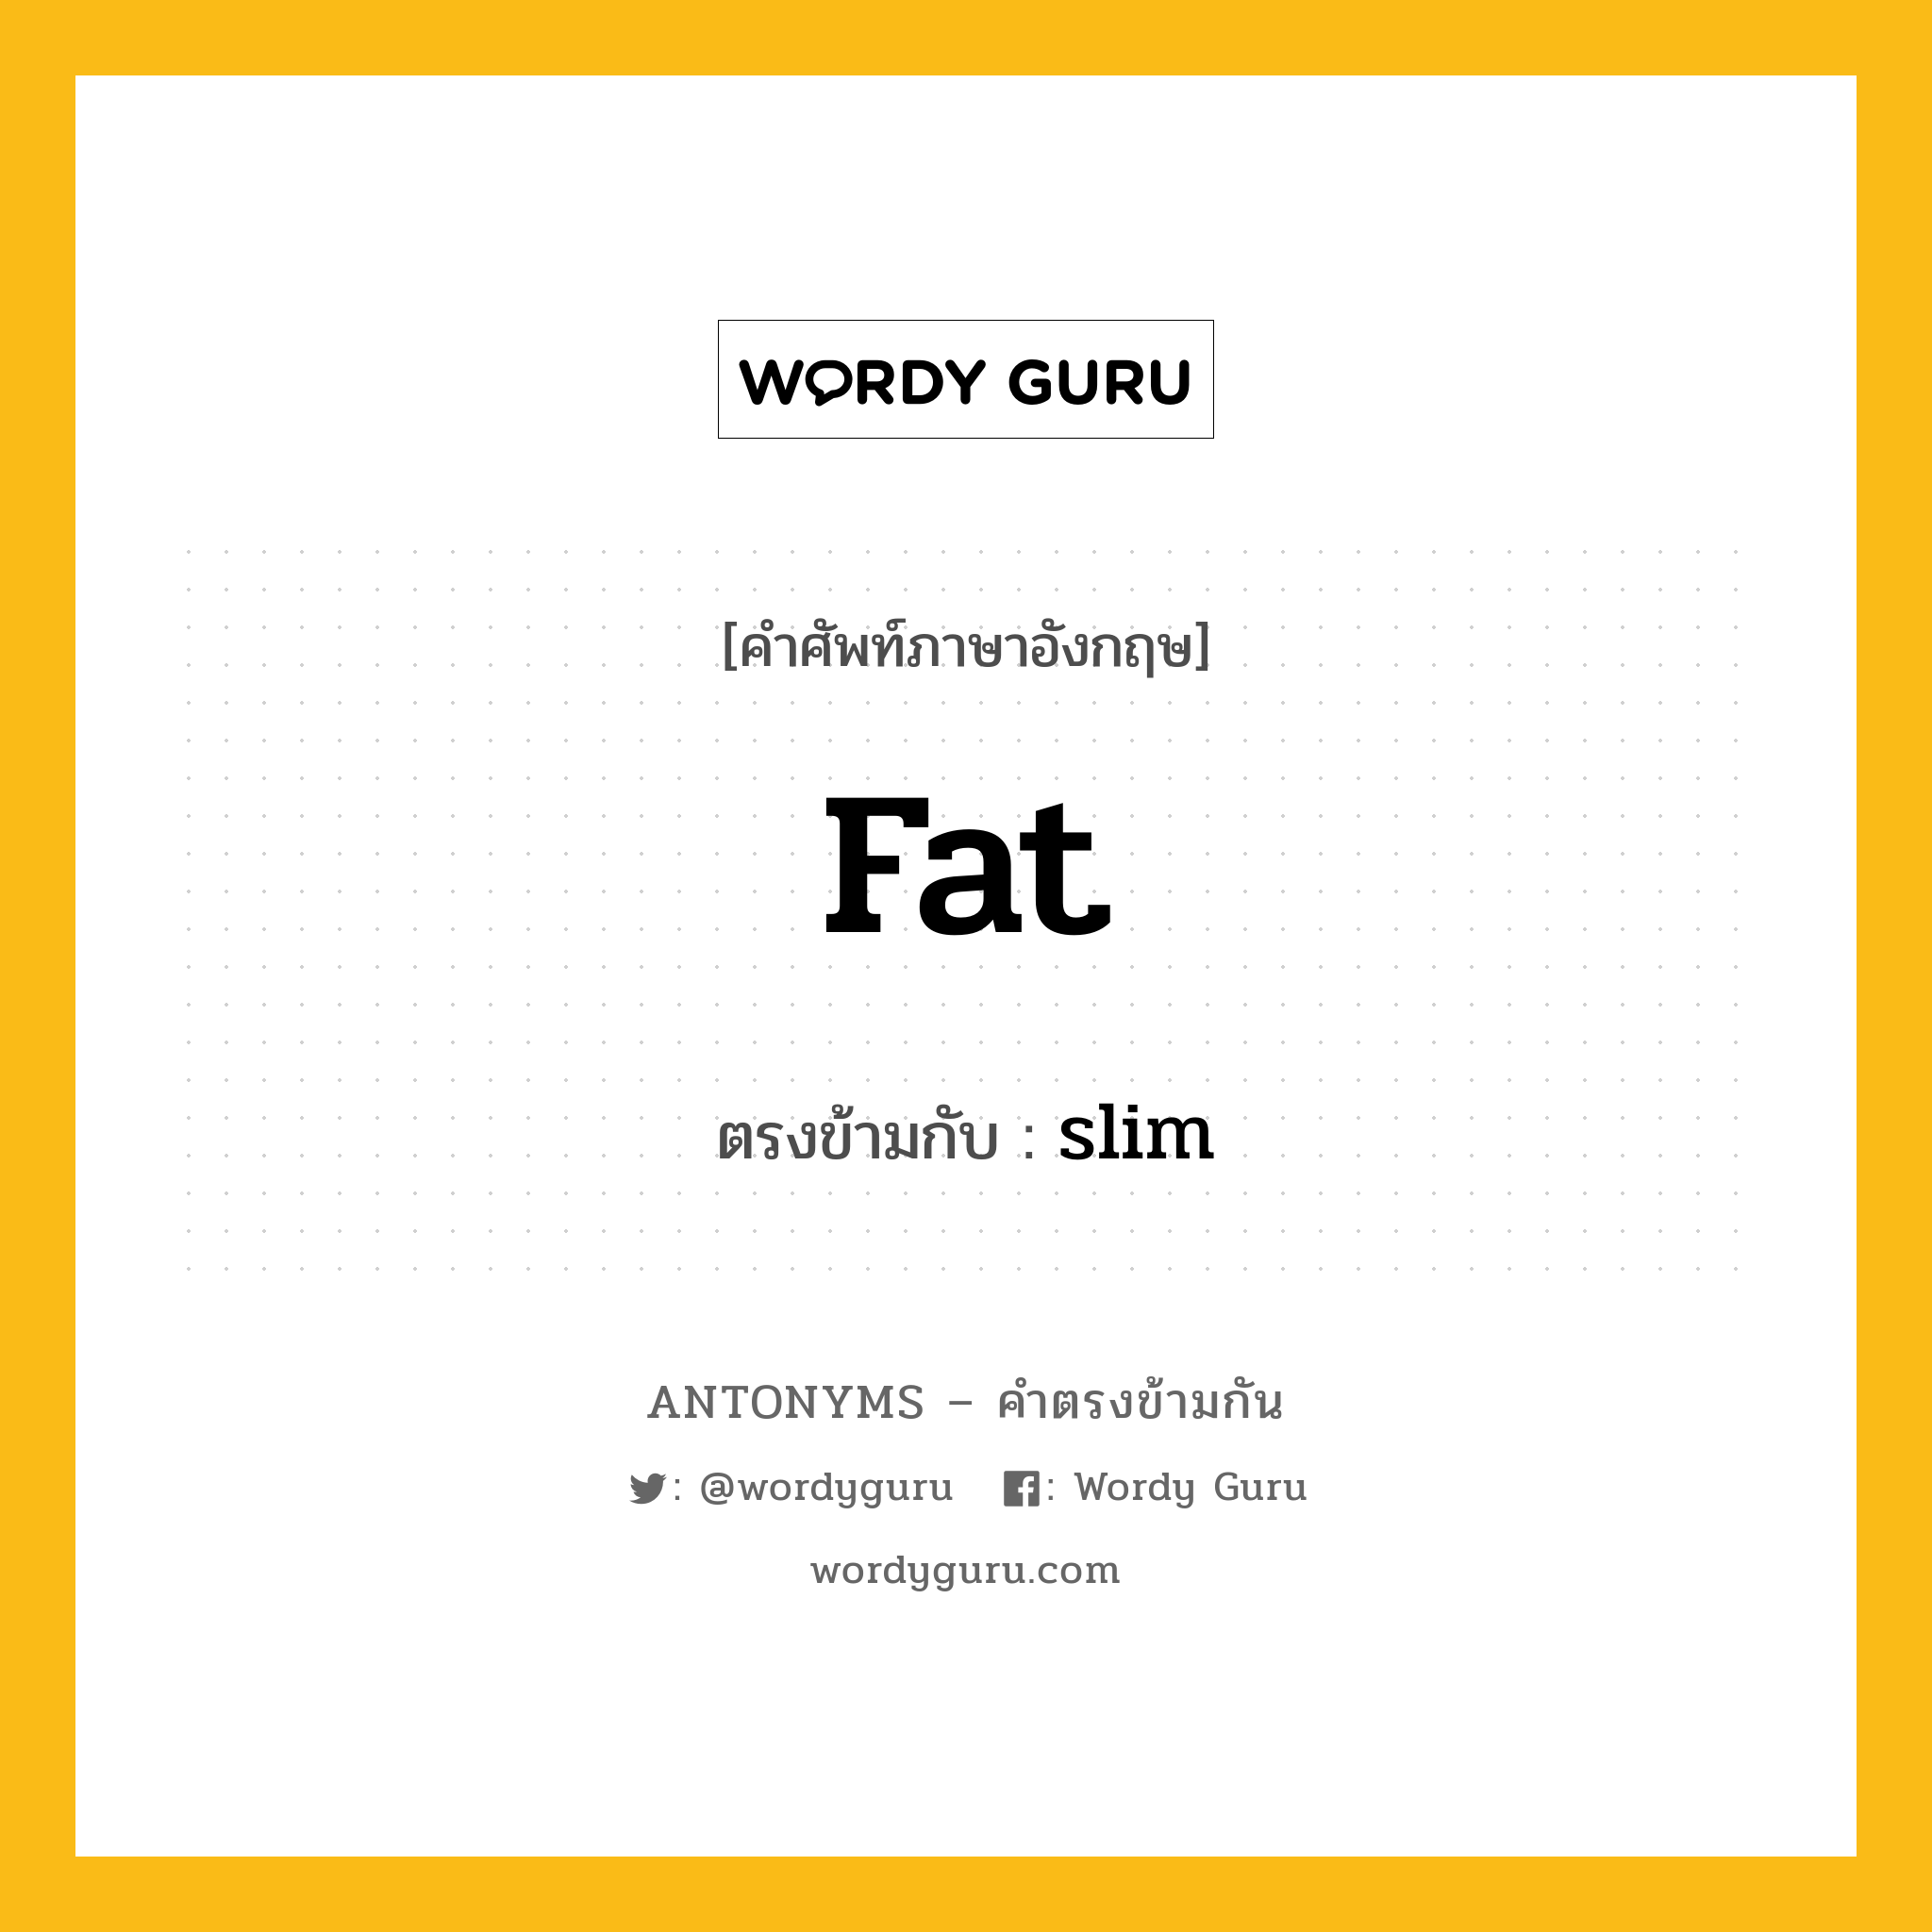 fat เป็นคำตรงข้ามกับคำไหนบ้าง?, คำศัพท์ภาษาอังกฤษ fat ตรงข้ามกับ slim หมวด slim